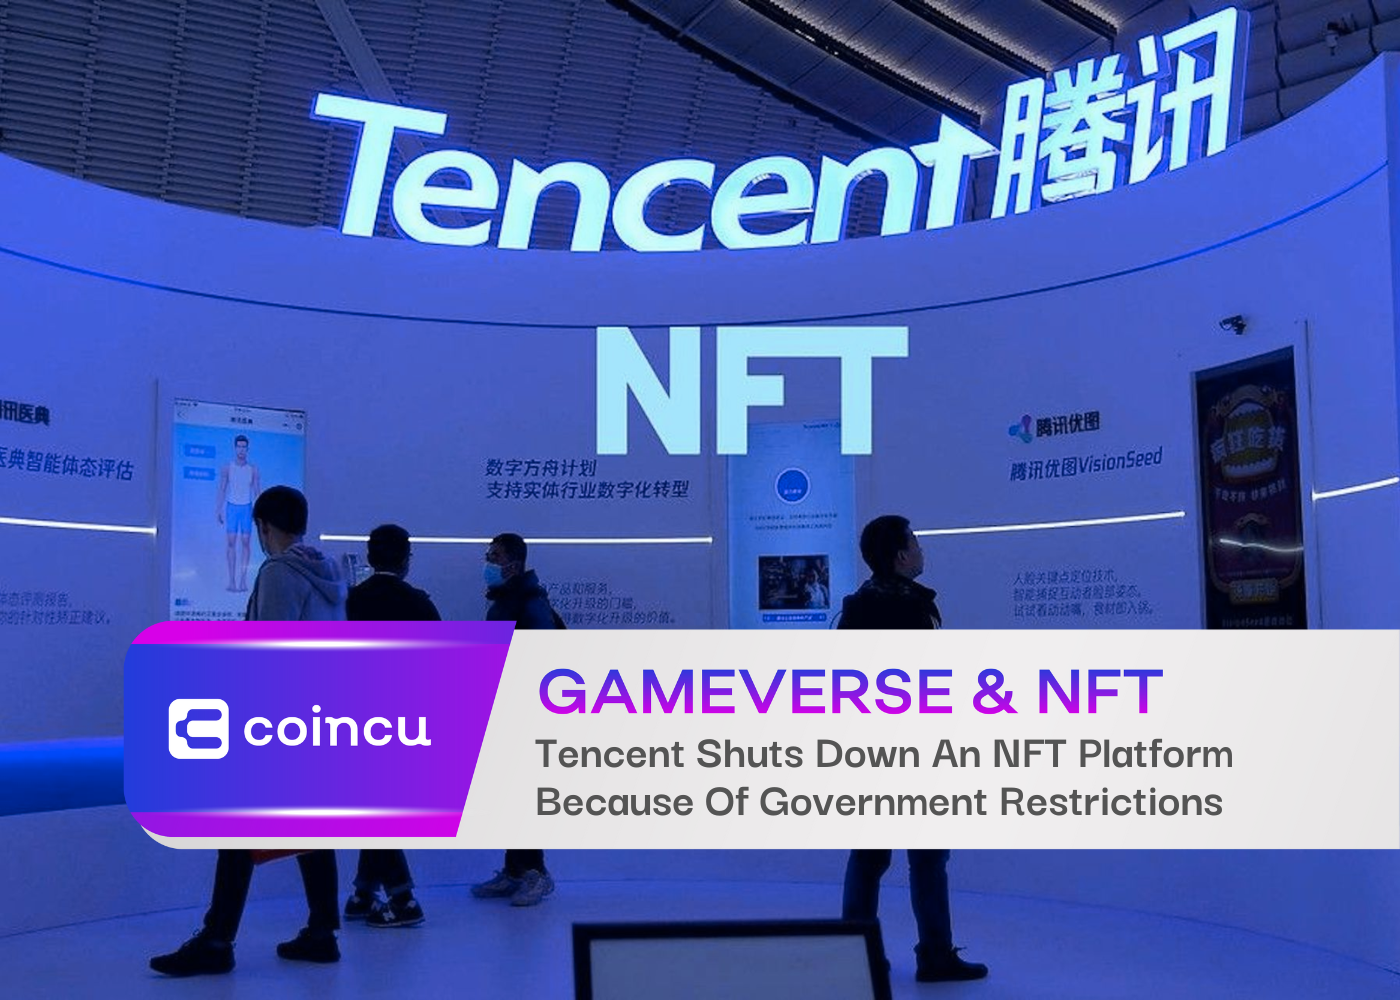 Tencent encerra uma plataforma NFT devido a restrições governamentais